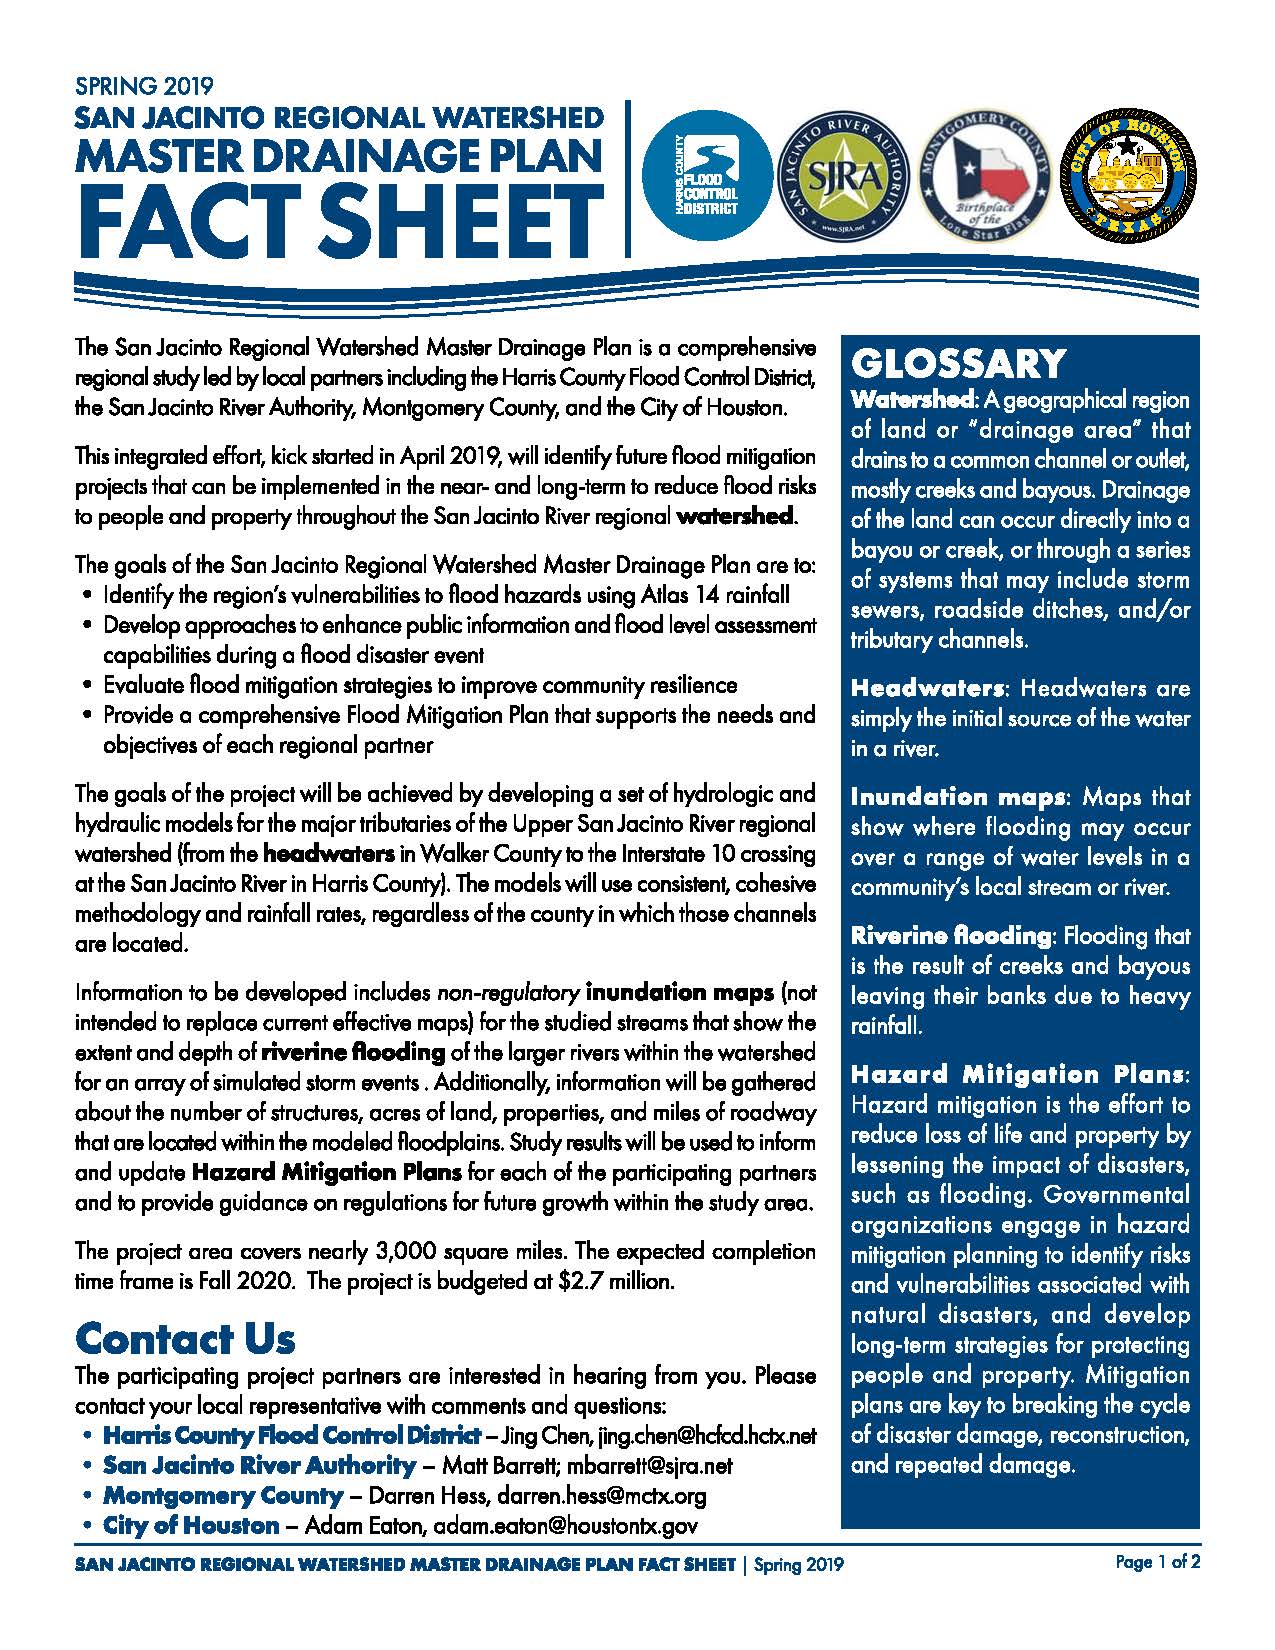 SJ Regional Watershed Master Drainage Plan Fact Sheet_Spring 2019_Page_1